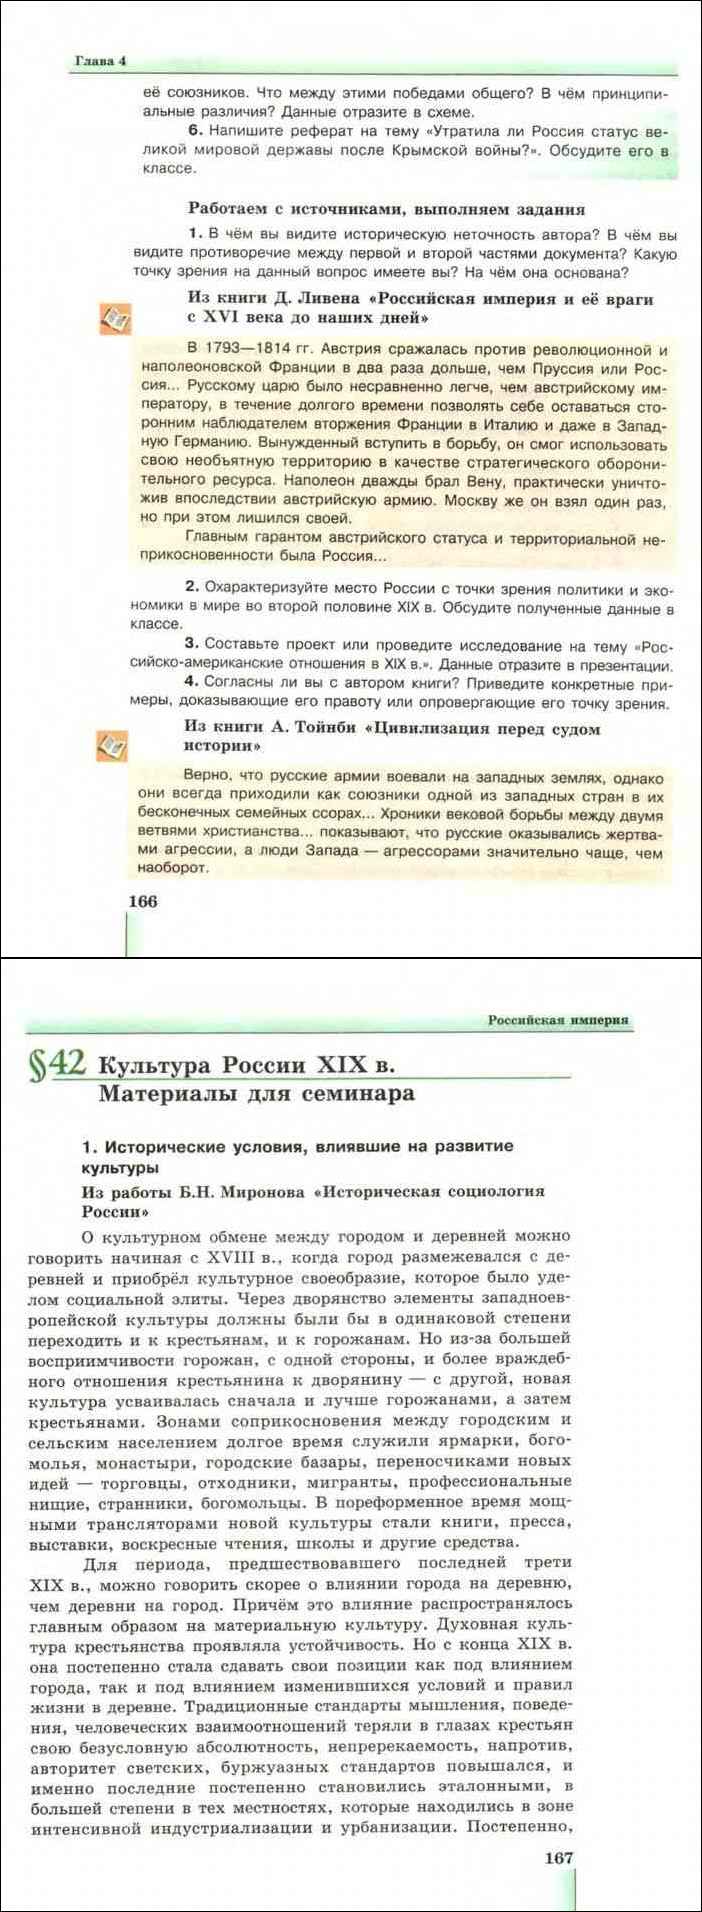 Реферат: История России XVI-XVIII вв.